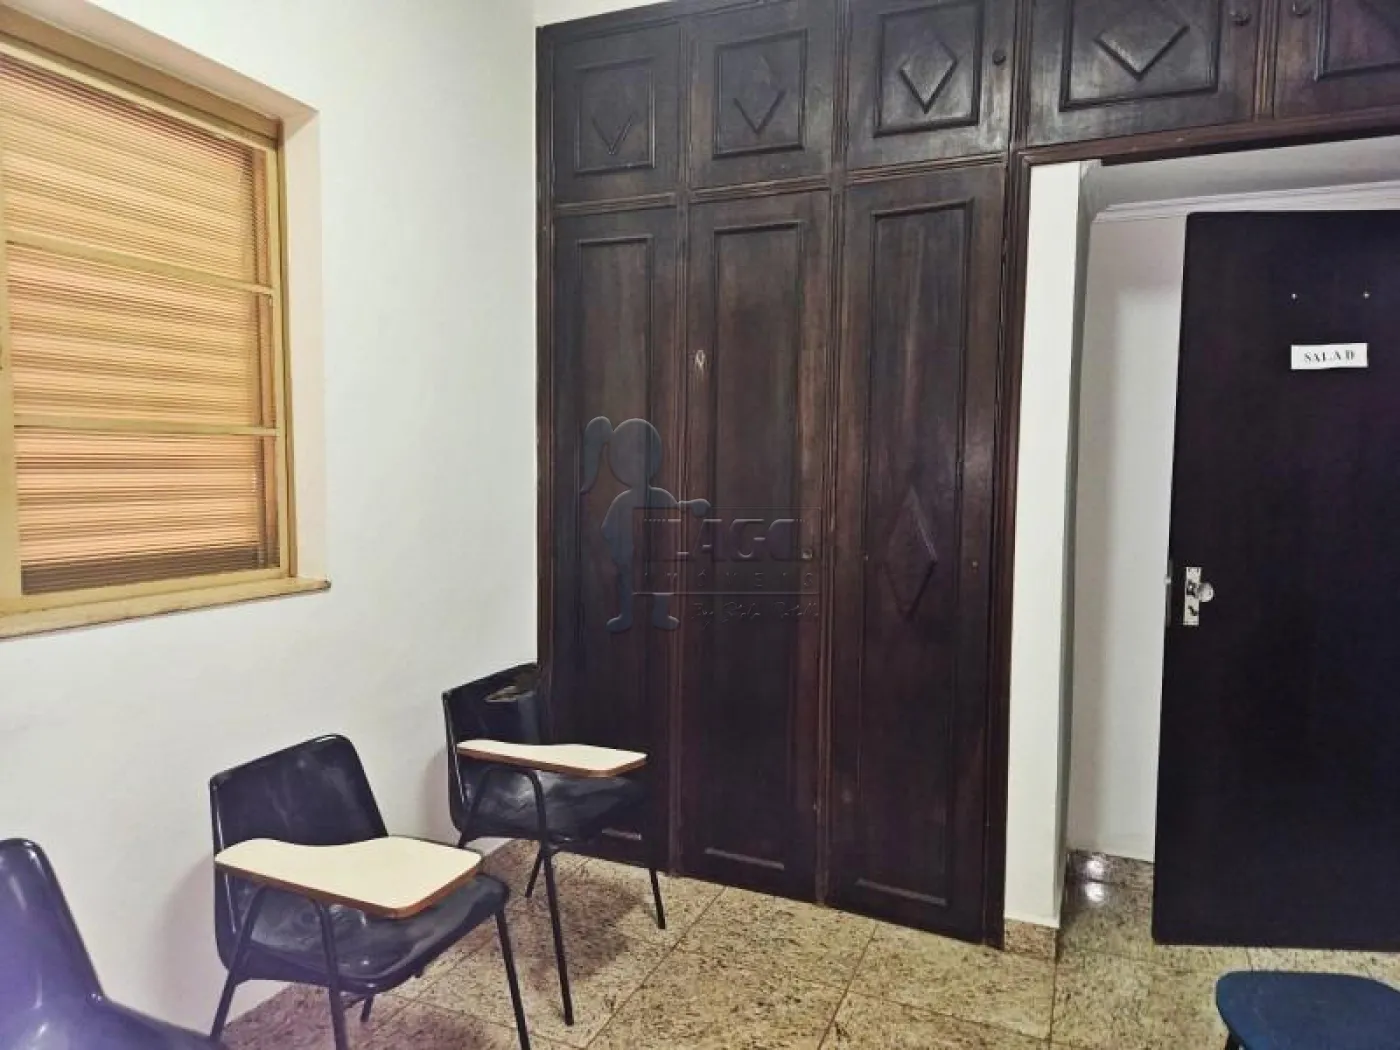 Alugar Casa / Padrão em Ribeirão Preto R$ 2.500,00 - Foto 6